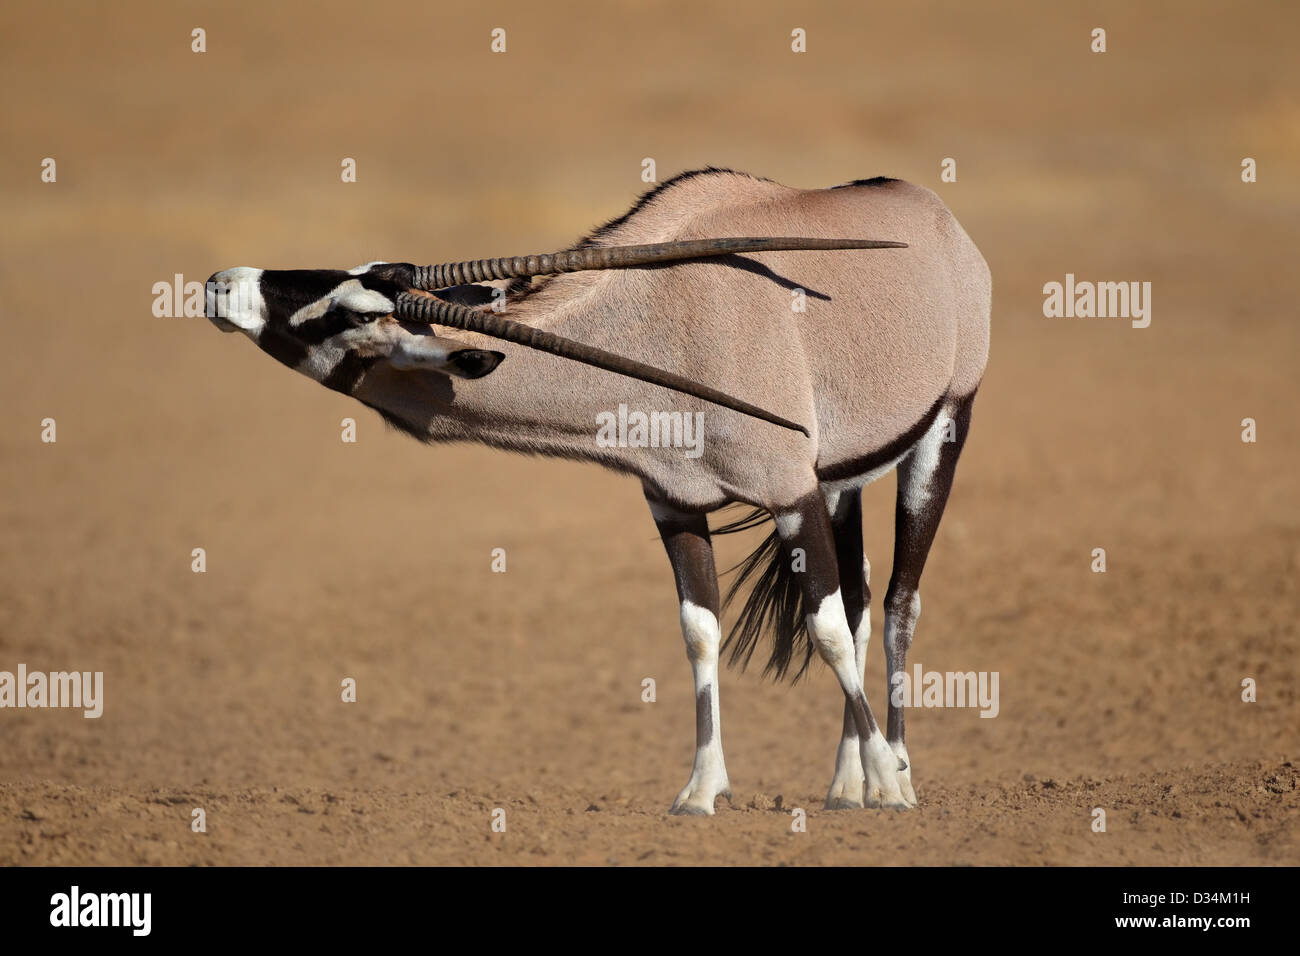 Antilope gemsbok (Oryx gazella), désert du Kalahari, Afrique du Sud Banque D'Images